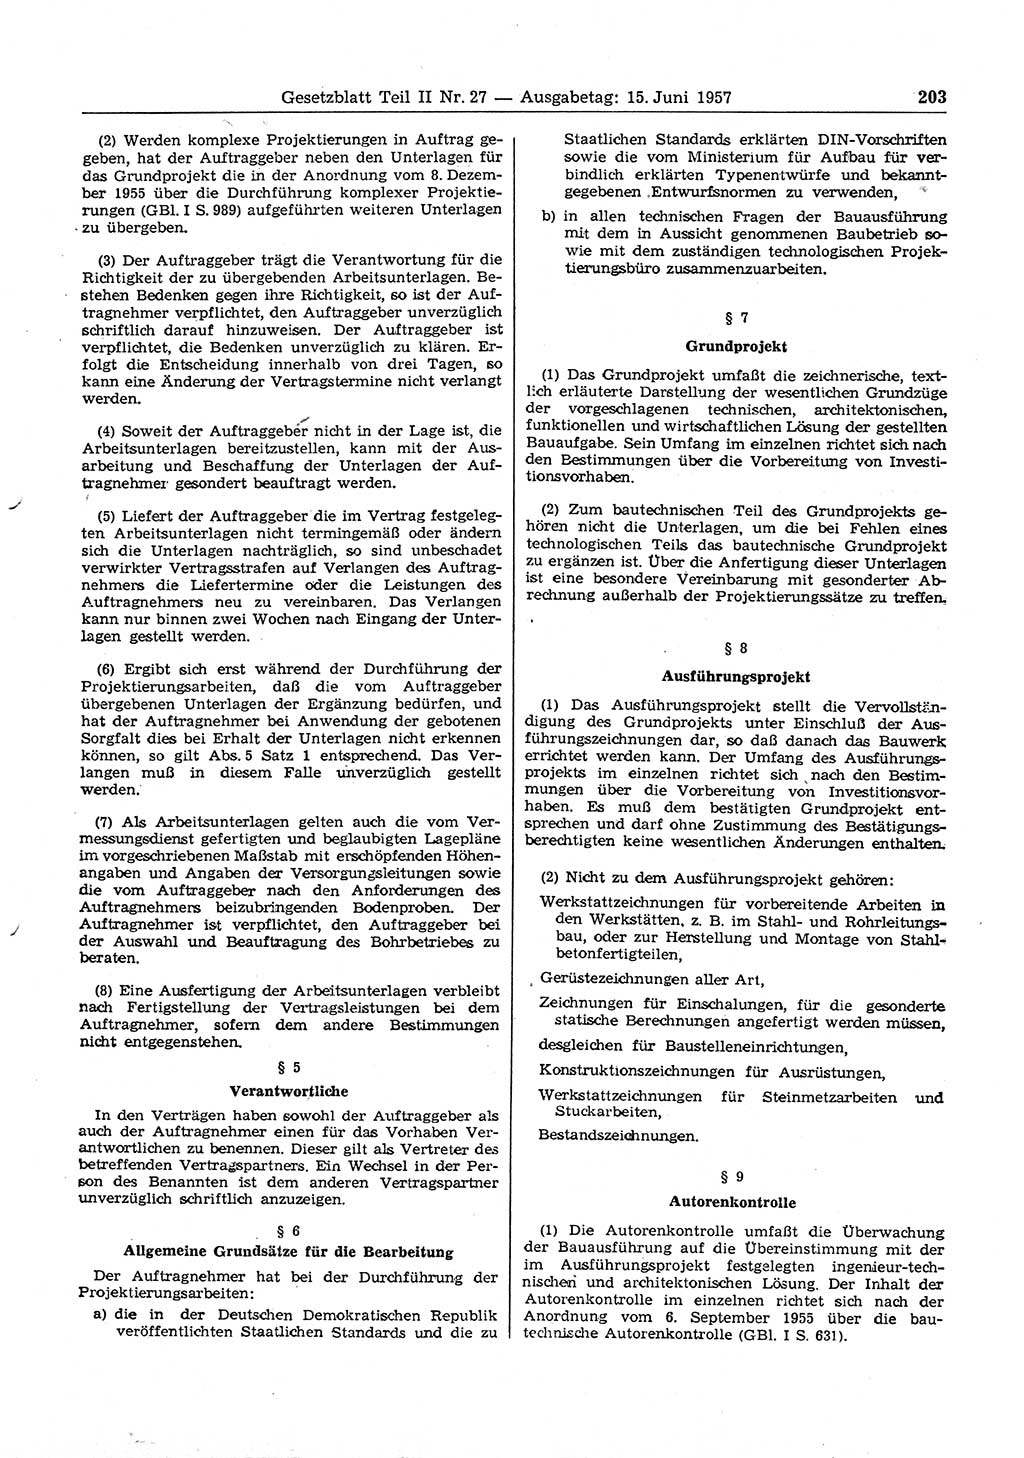 Gesetzblatt (GBl.) der Deutschen Demokratischen Republik (DDR) Teil ⅠⅠ 1957, Seite 203 (GBl. DDR ⅠⅠ 1957, S. 203)